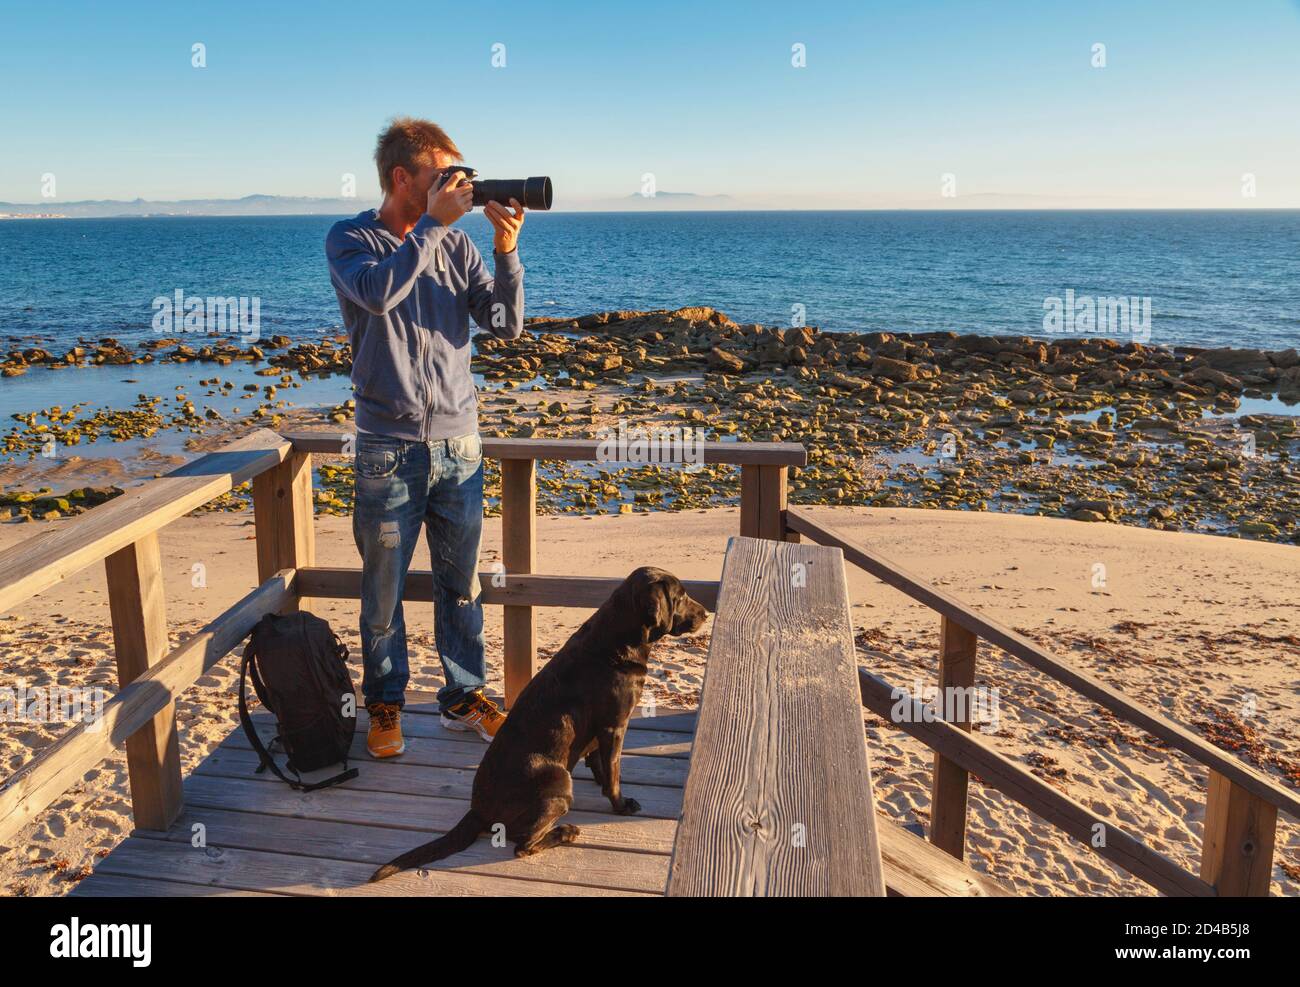 Ein Fotograf komponiert ein Bild. Auch sein Hund schaut auf das Thema. In der Nähe von Tarifa, Costa de la Luz, Provinz Cadiz, Andalusien, Südspanien. Stockfoto